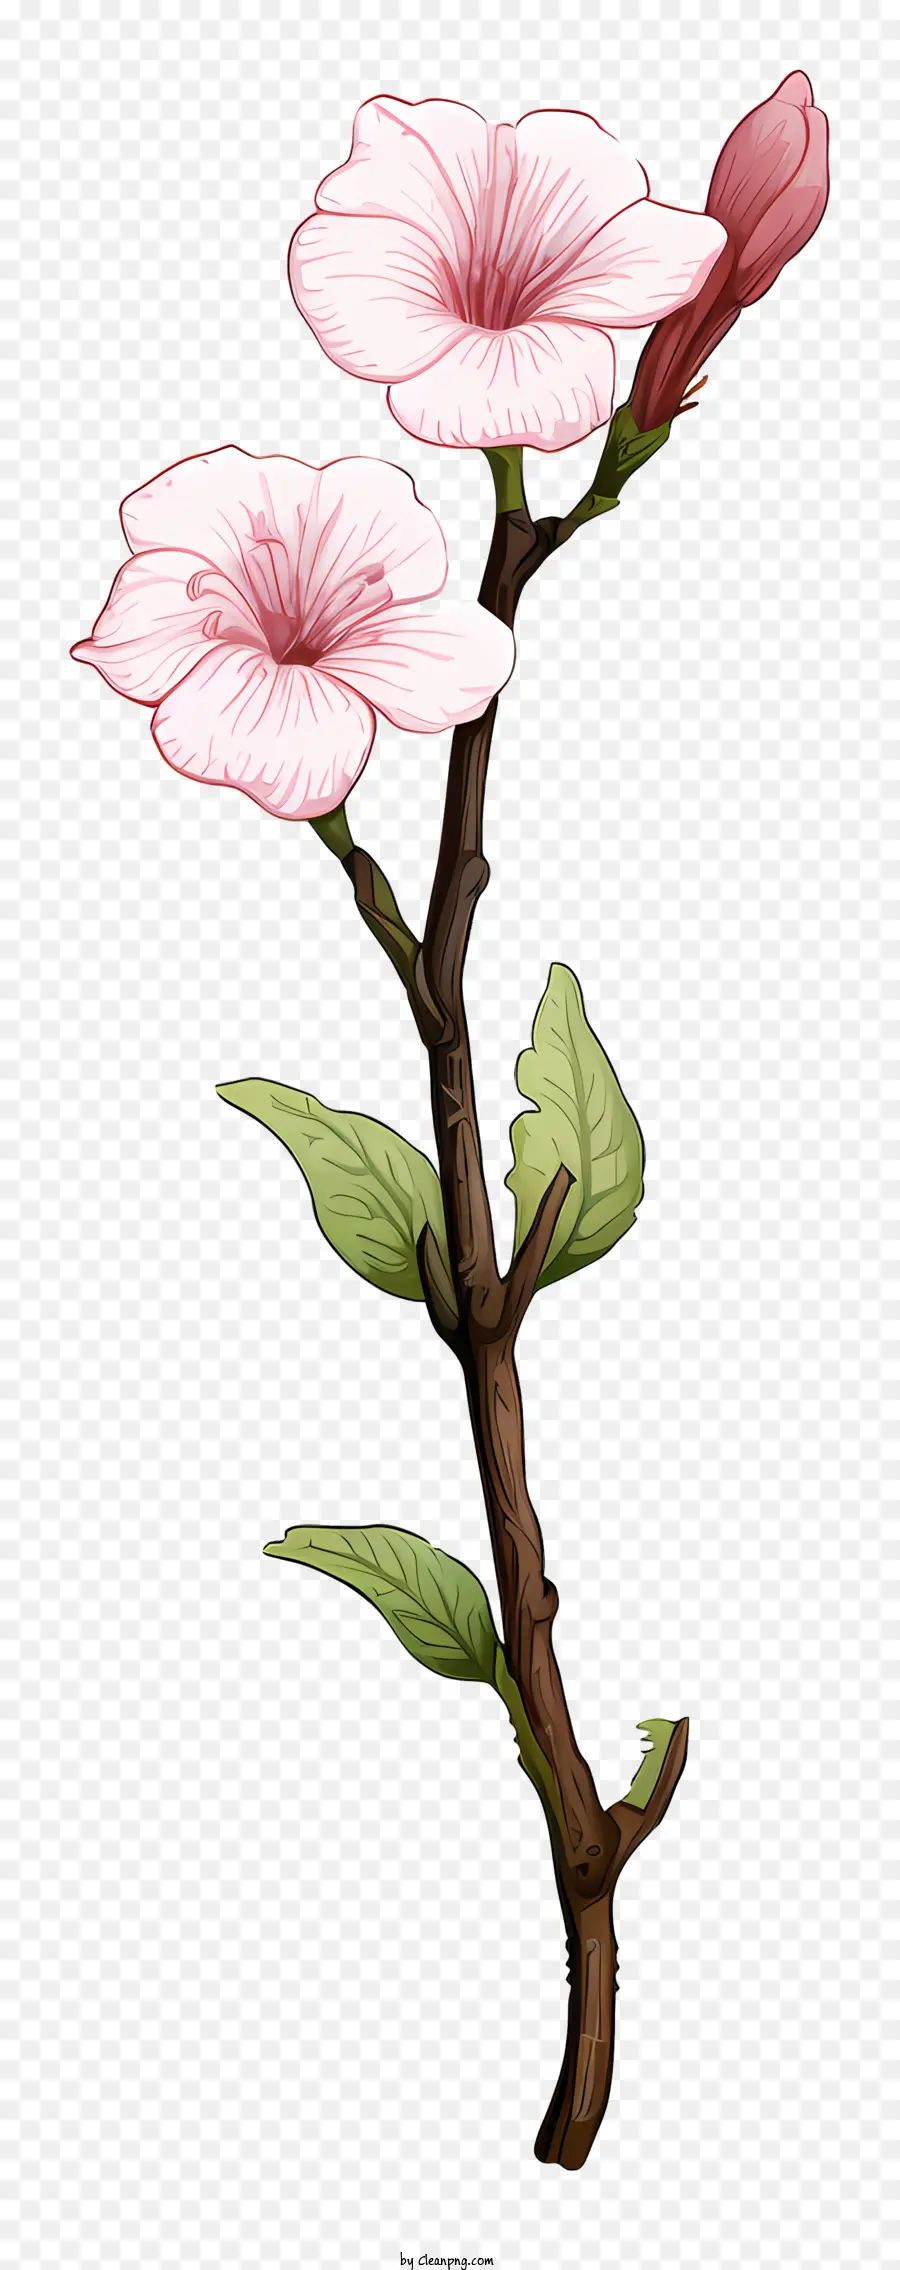 rosa Blume - Rosa Blume mit langem Stiel und V-förmiges Blütenblatt